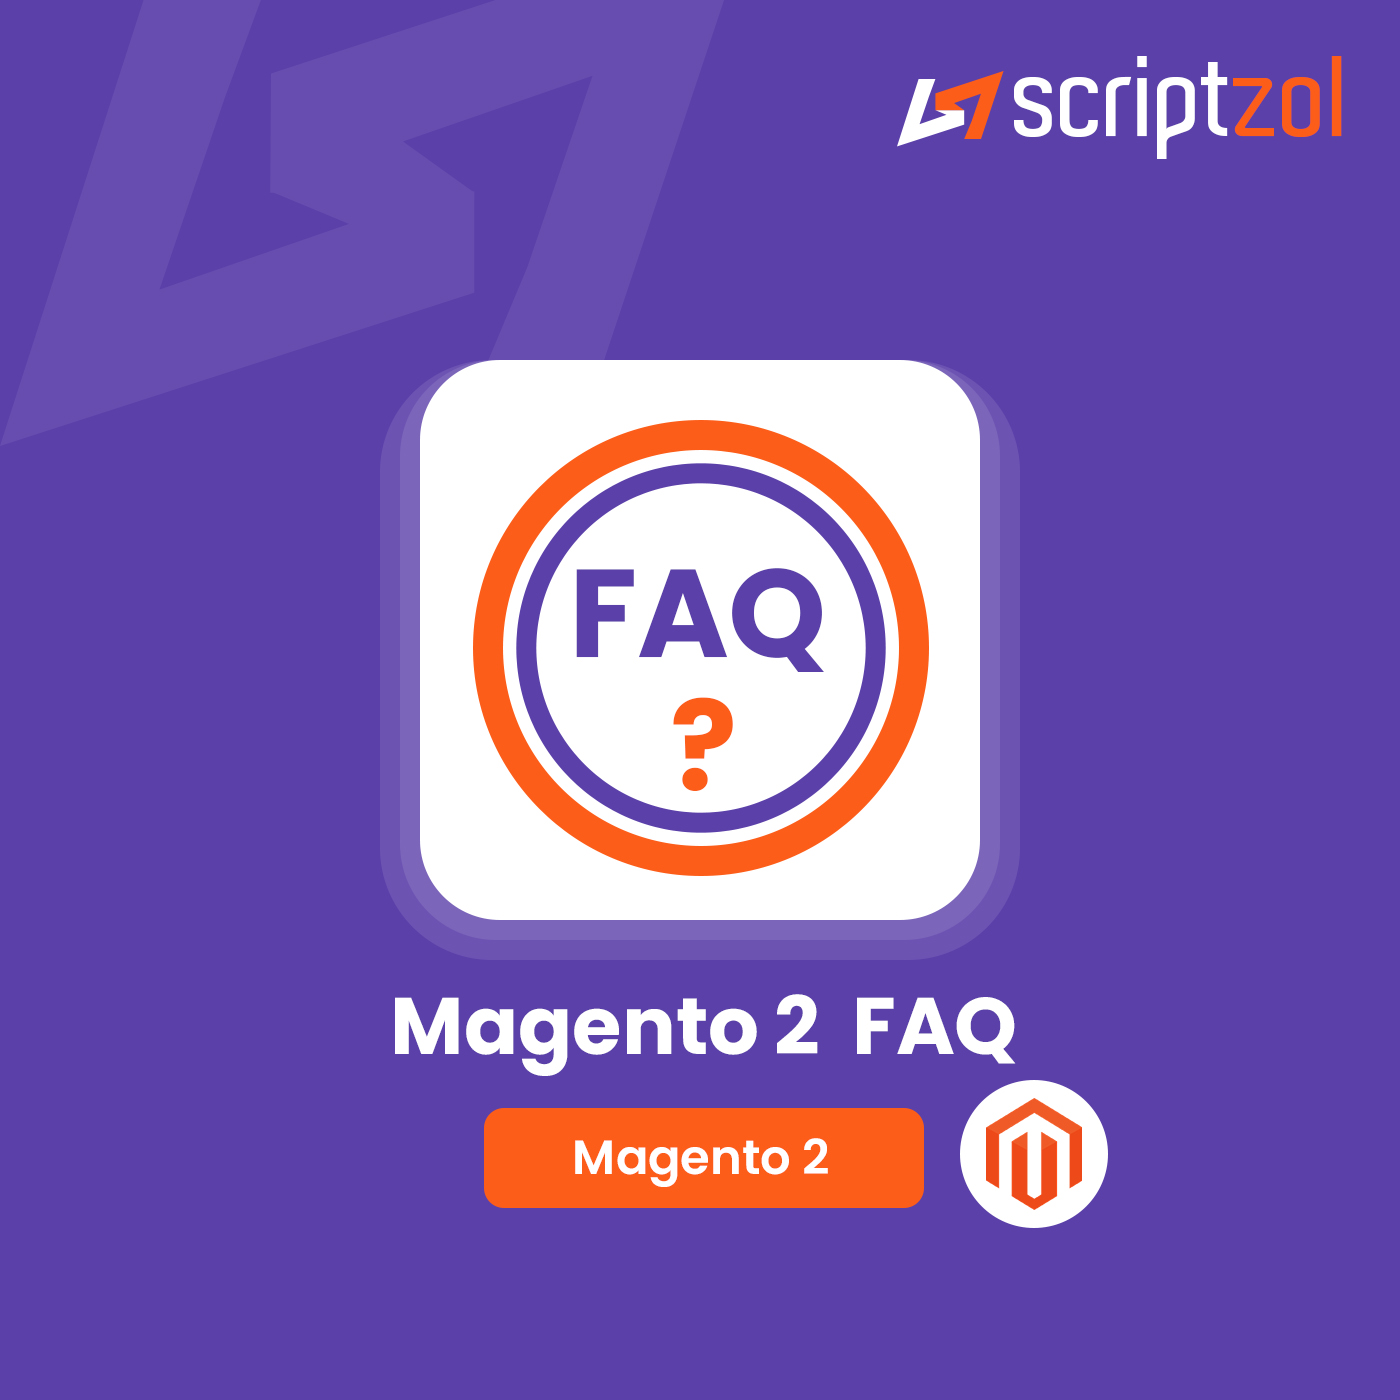 Magento 2 FAQ | Knowledge Base Magento 2 Module - Scriptzol